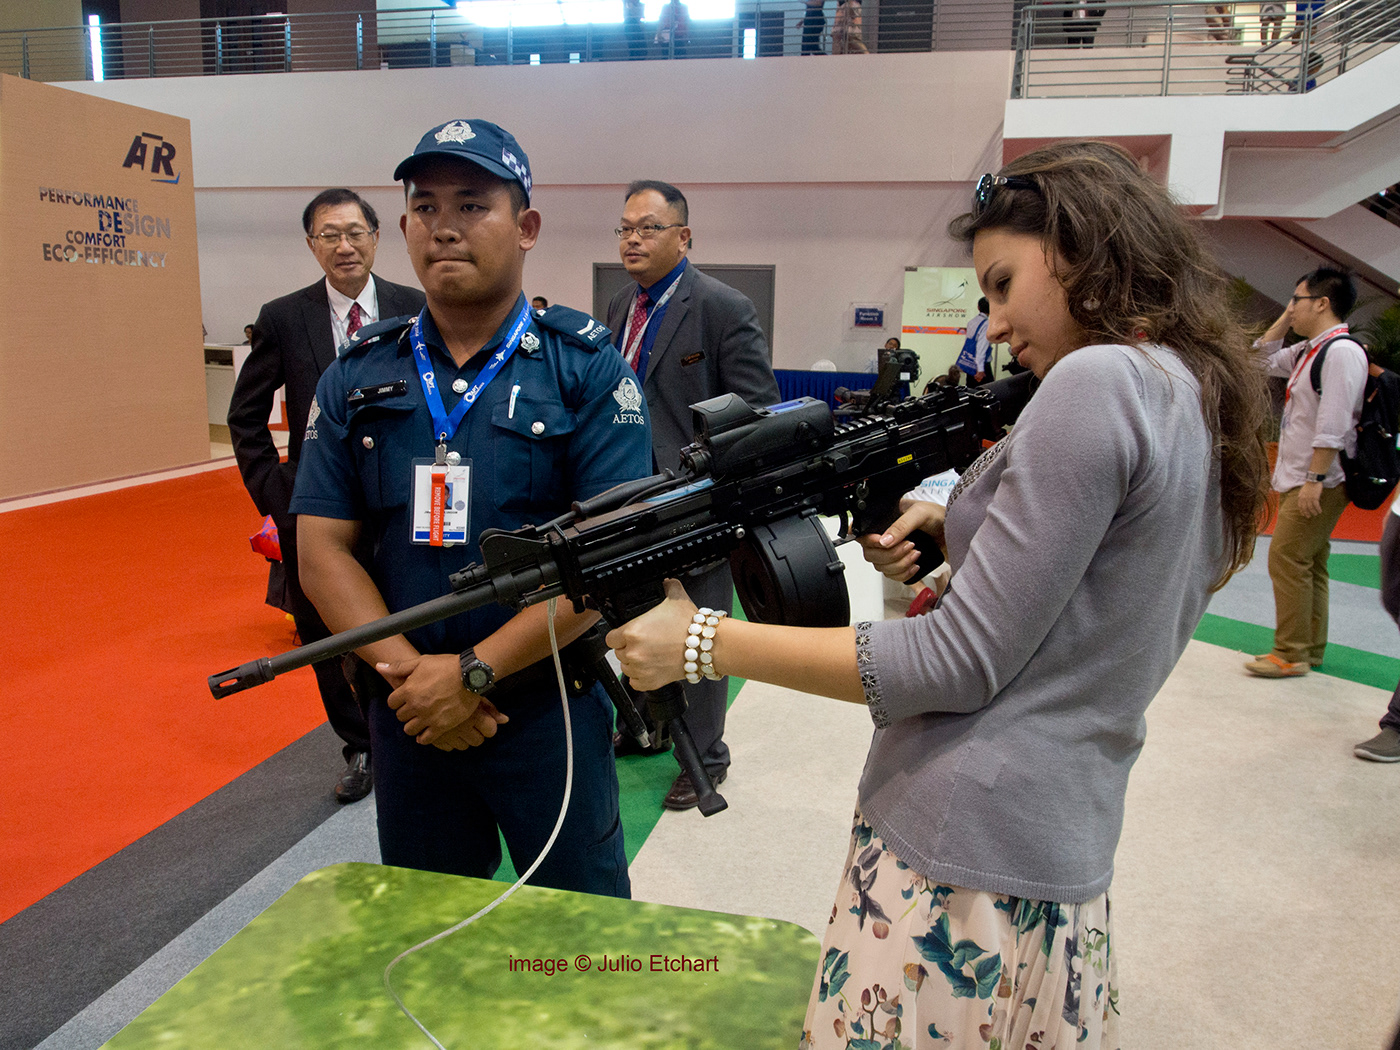 tradefair weapons guns War armfair arms trade